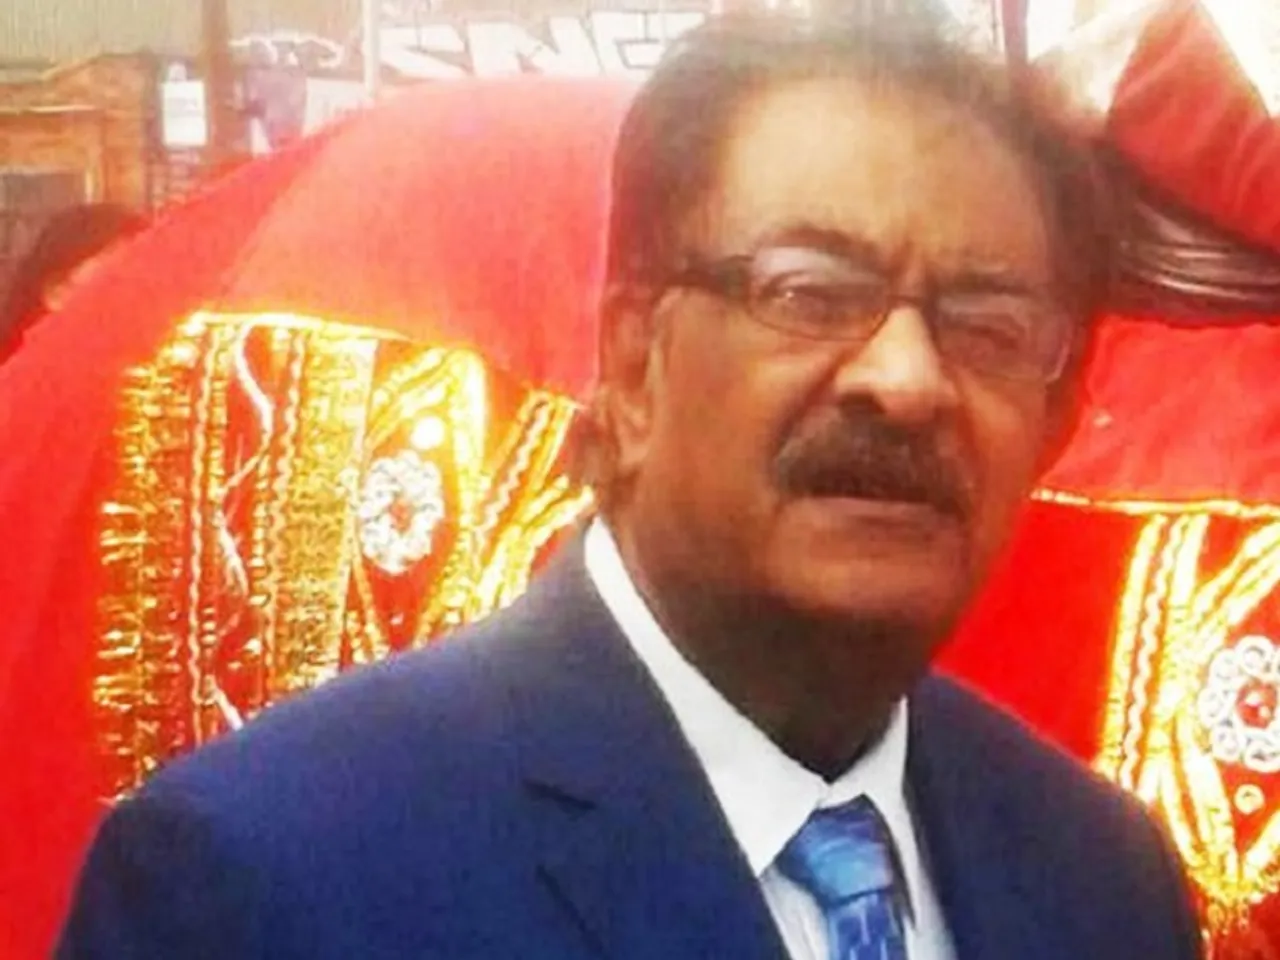 6 held for kidnap, murder of Indian-origin jeweller in UK